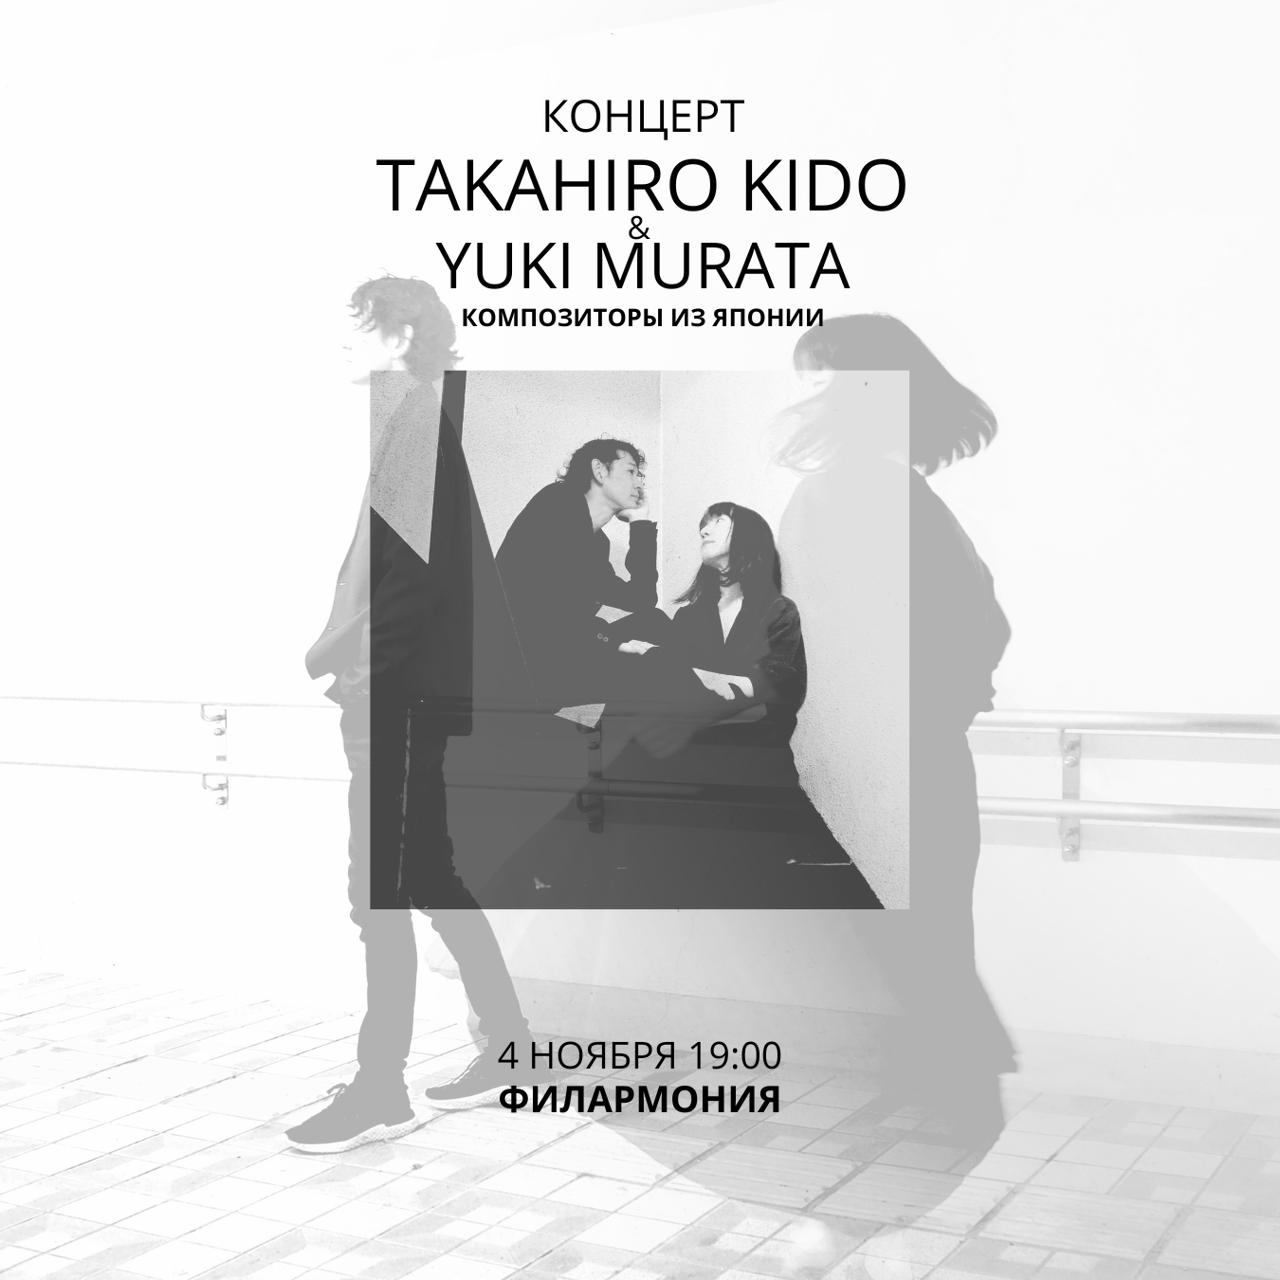 В Алматы пройдет концерт японских композиторов Такахиро Кидо и Юки Мурата